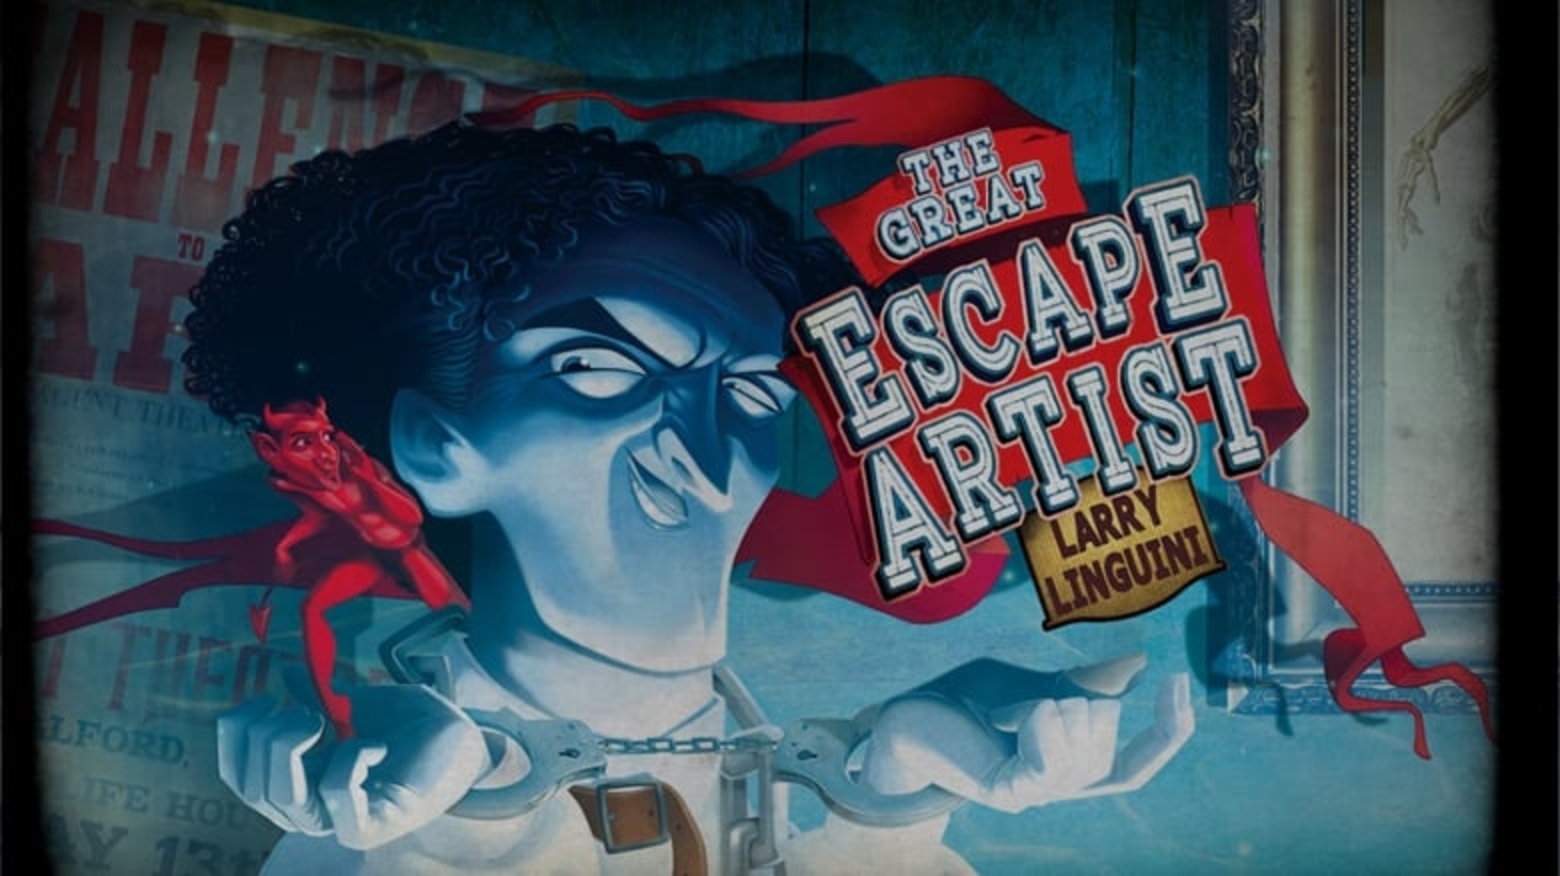 The Great Escape Artist demo